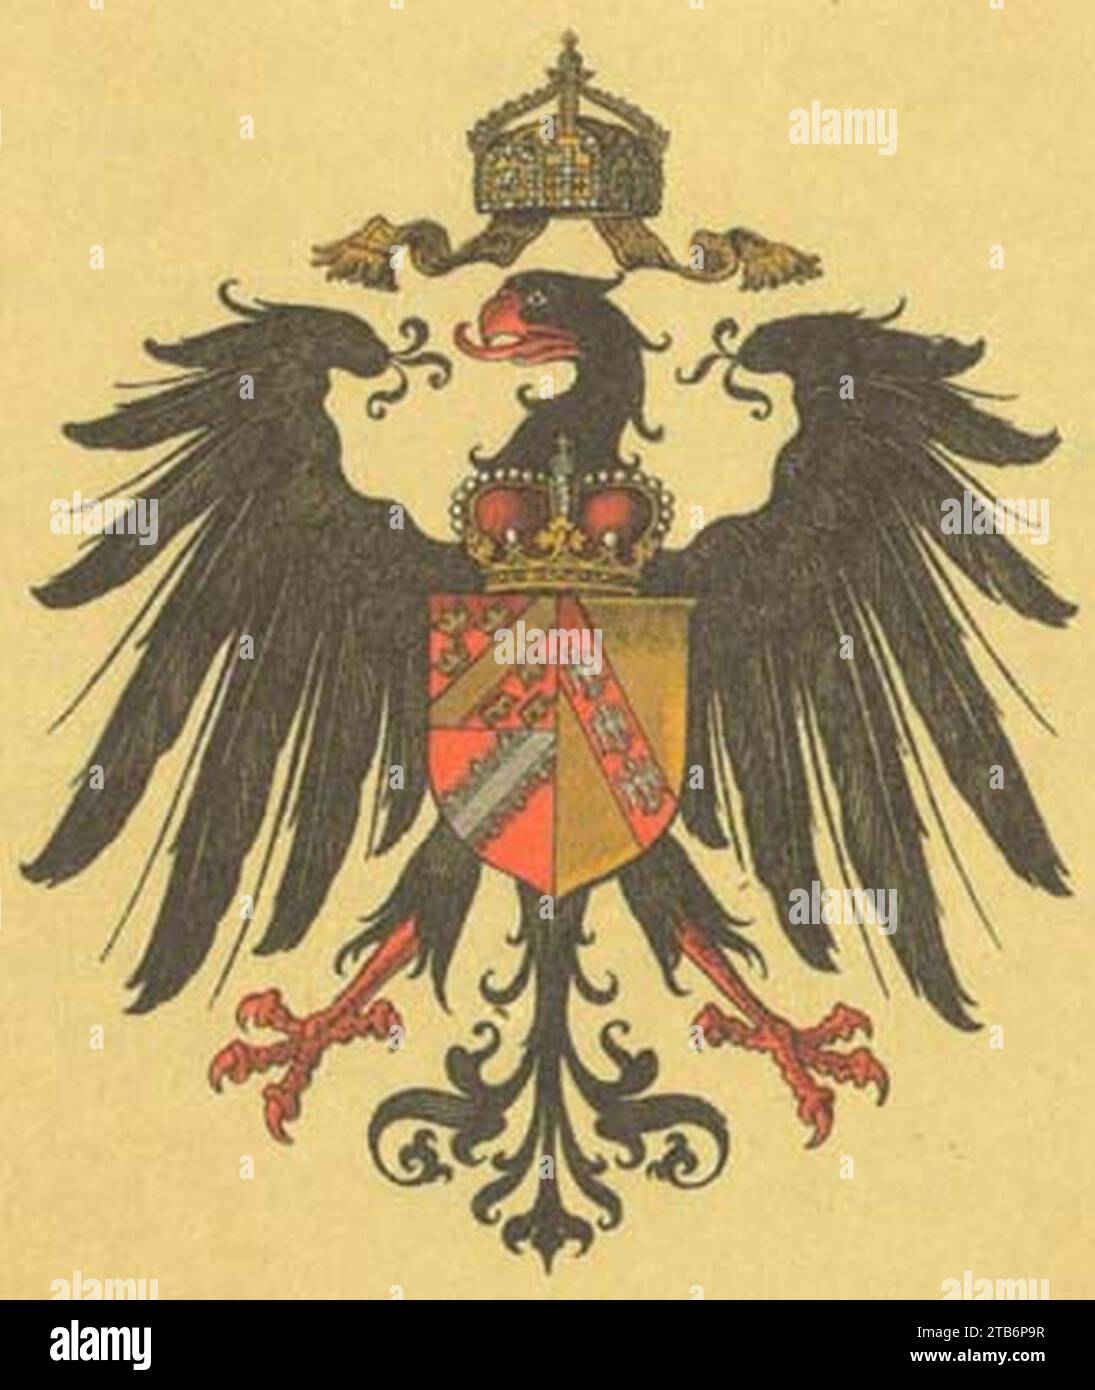 Wappen Deutsches Reich - Reichsland Elsass-Lothringen. Stock Photo